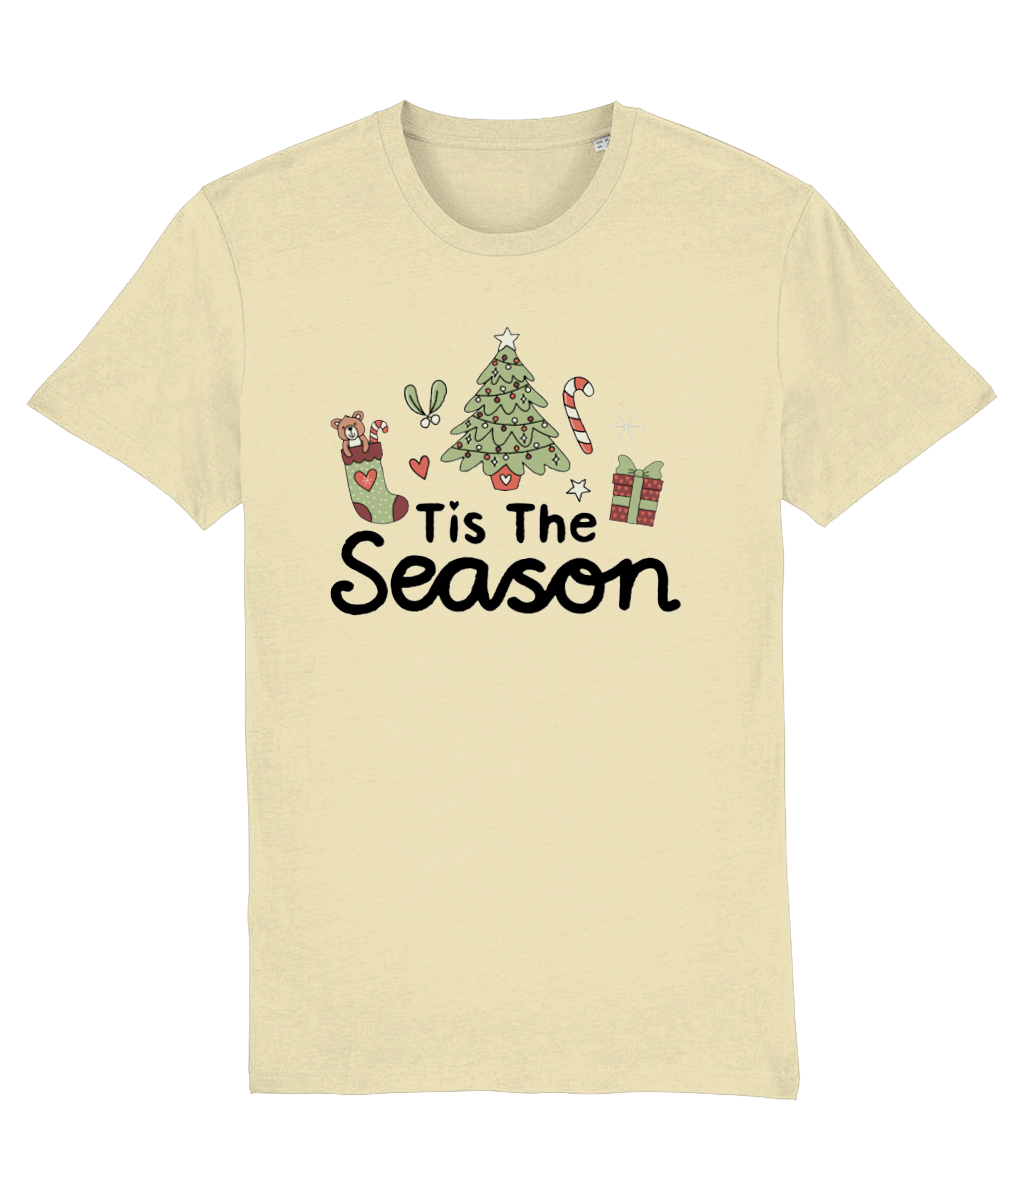 Tis The Season - Adult T-Shirt - Light Multi Colour Available